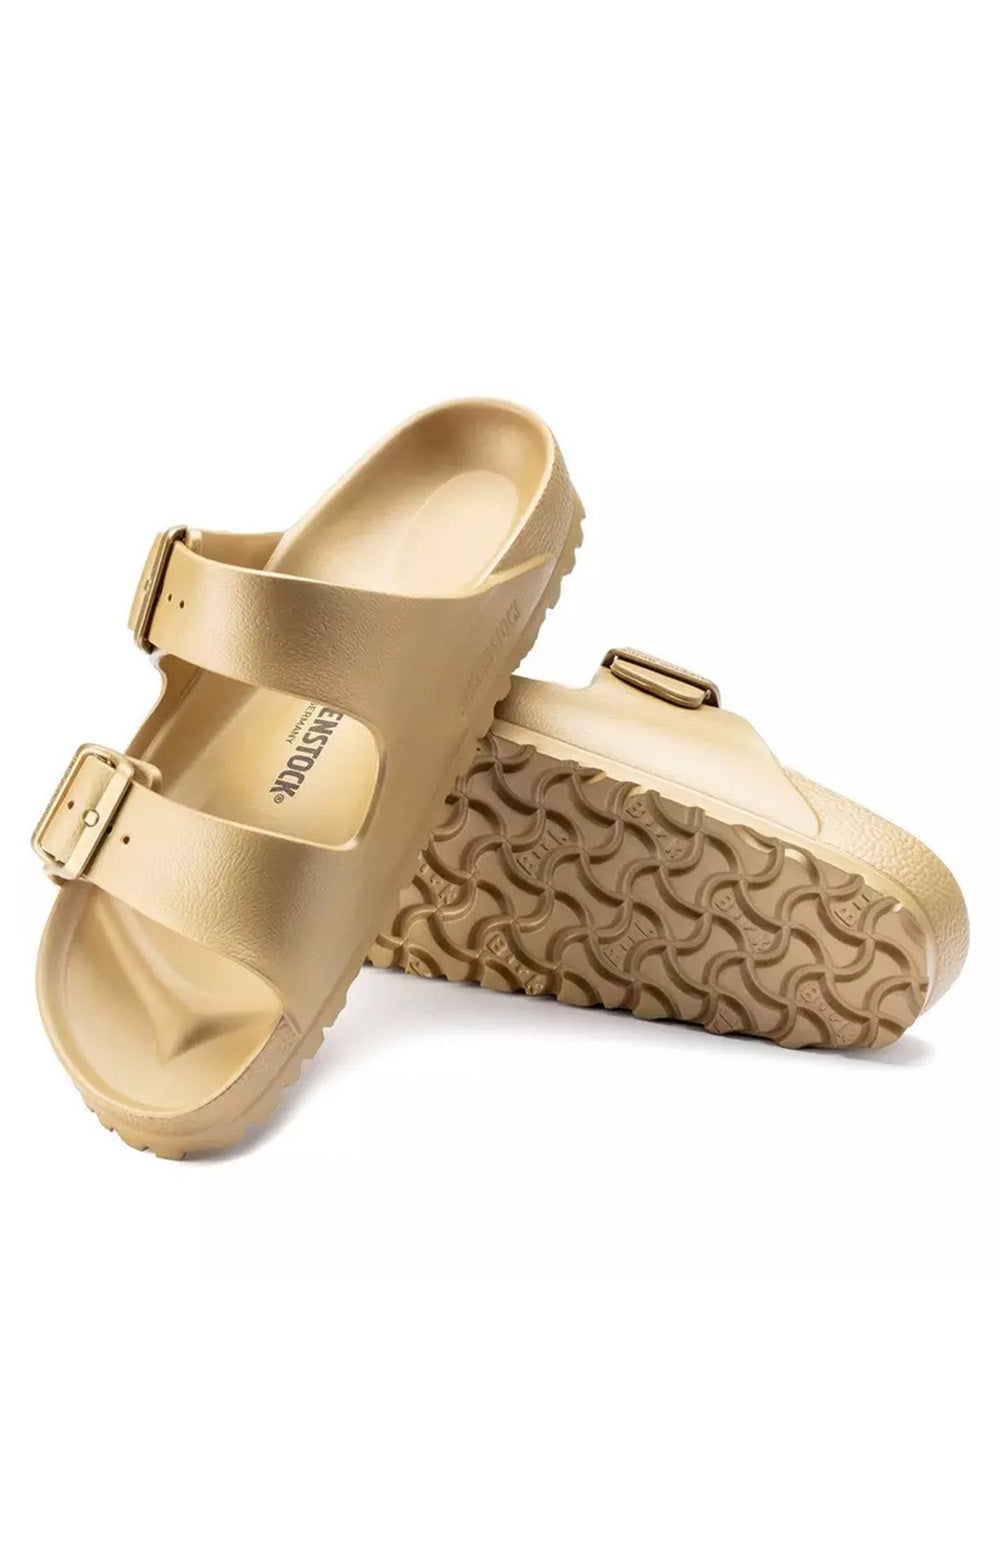  1022465 Arizona Eva Sandals Gold - Trendy and durable footwear for outdoor activities